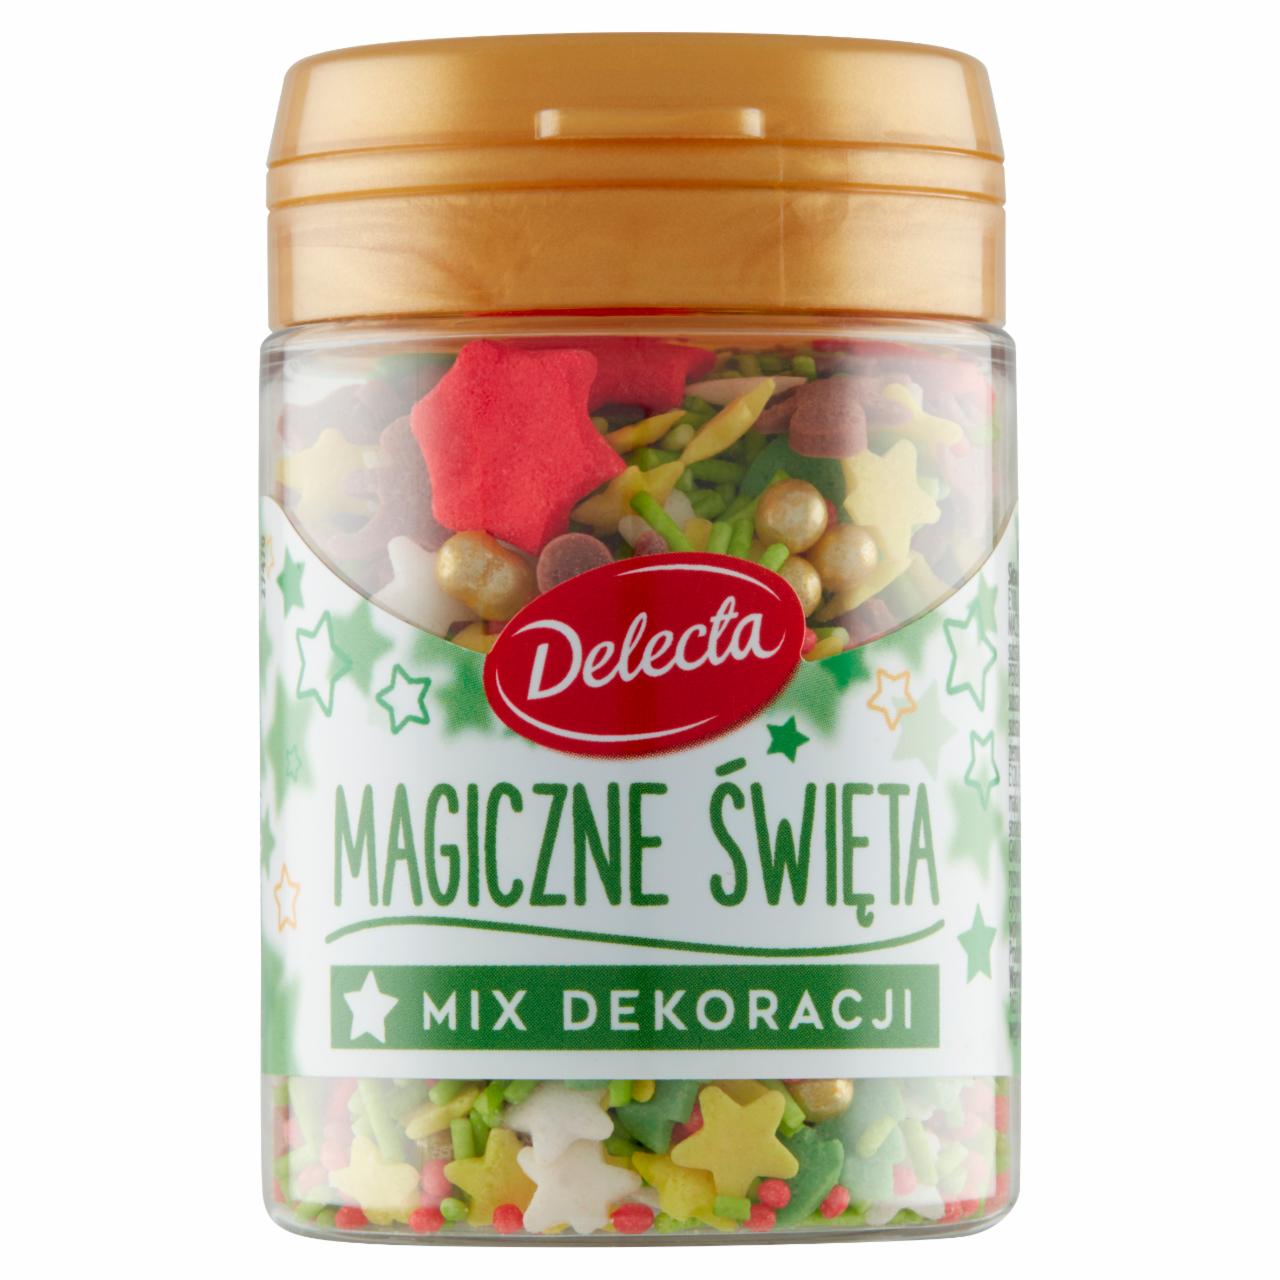 Zdjęcia - Delecta Mix dekoracji magiczne święta 55 g